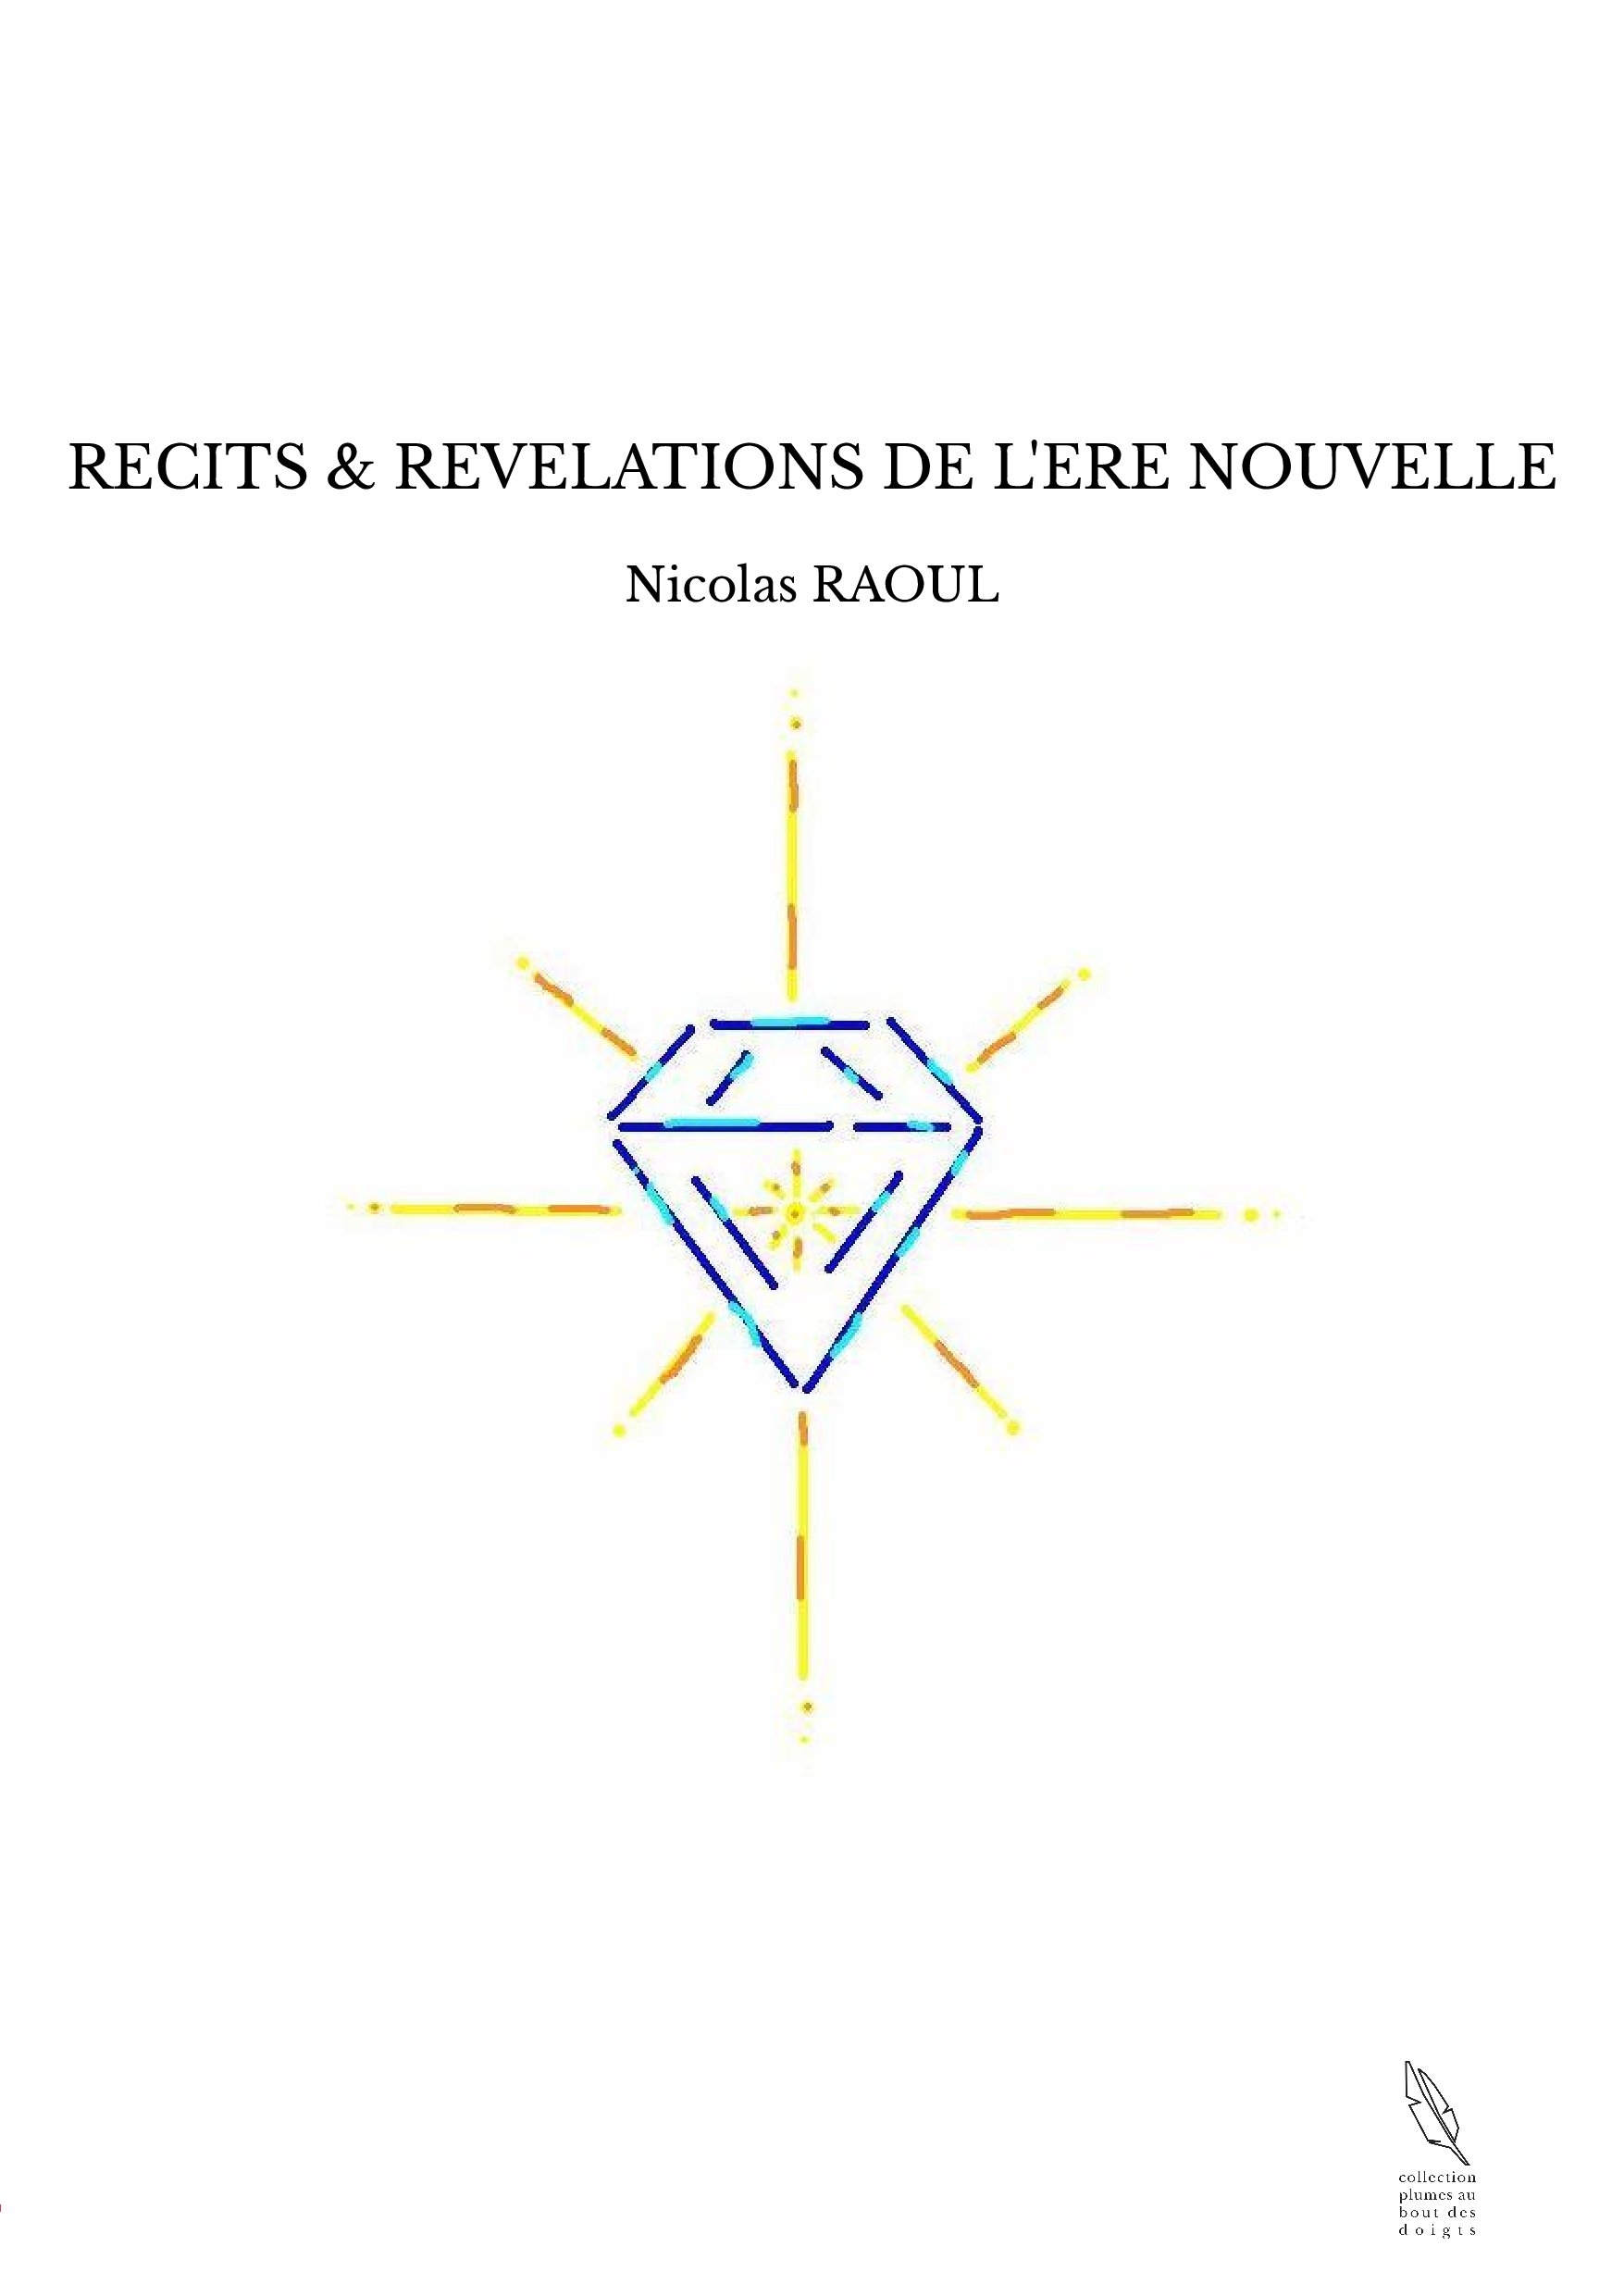 RECITS & REVELATIONS DE L'ERE NOUVELLE